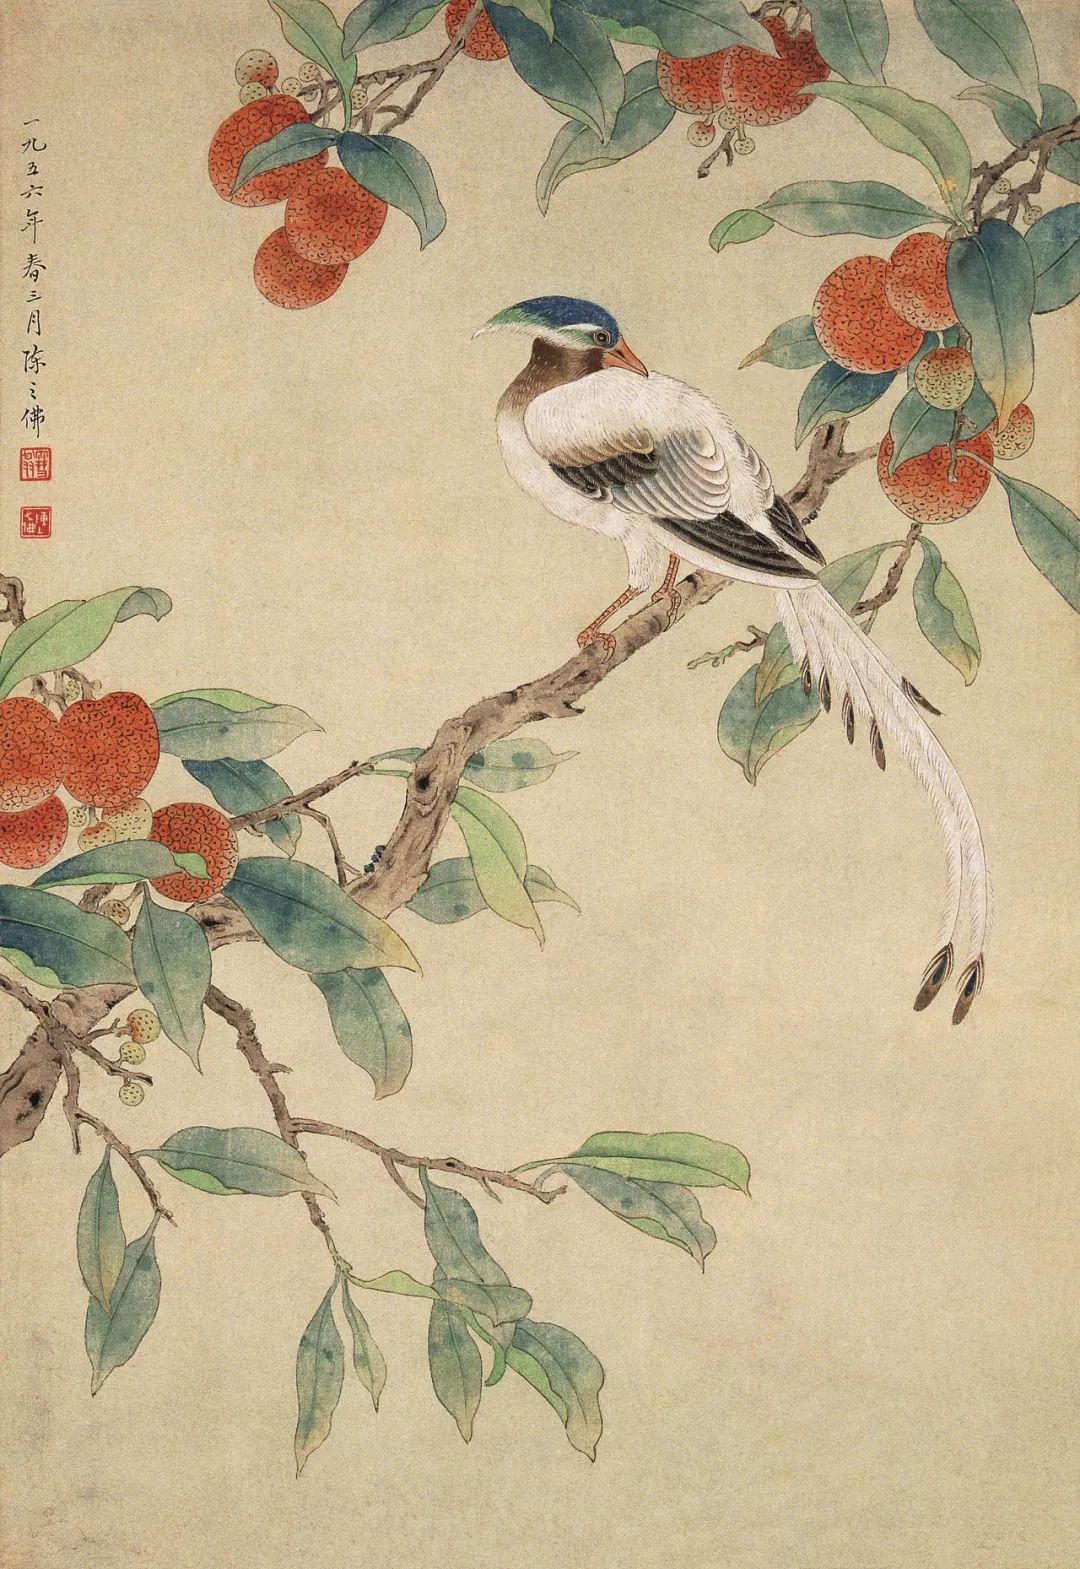 《荔枝绶带》 陈之佛 中国画 50.5×34.8cm 1956年 南京博物院藏